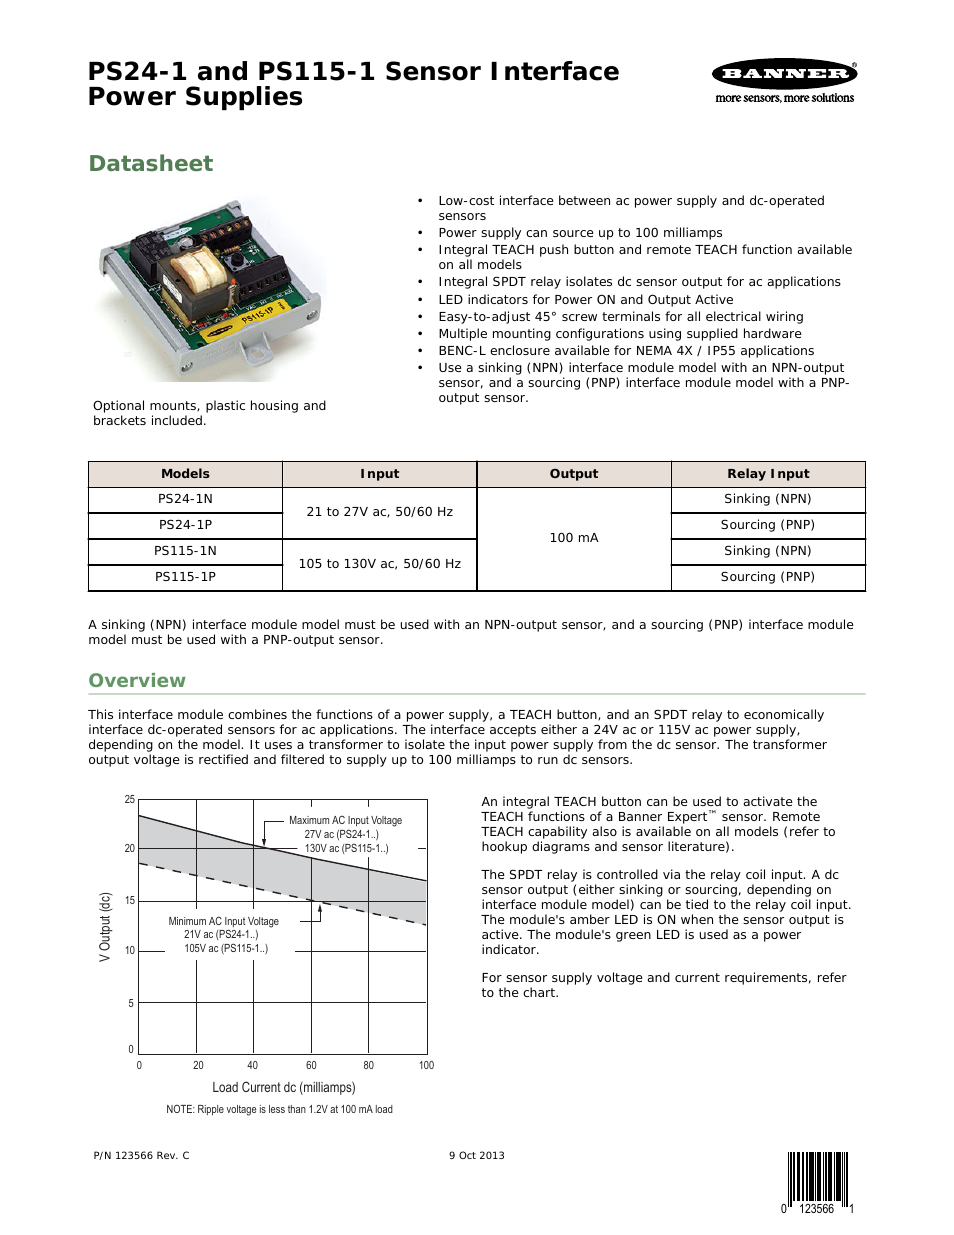 PS115-1 Sensor Interface Power Supplies